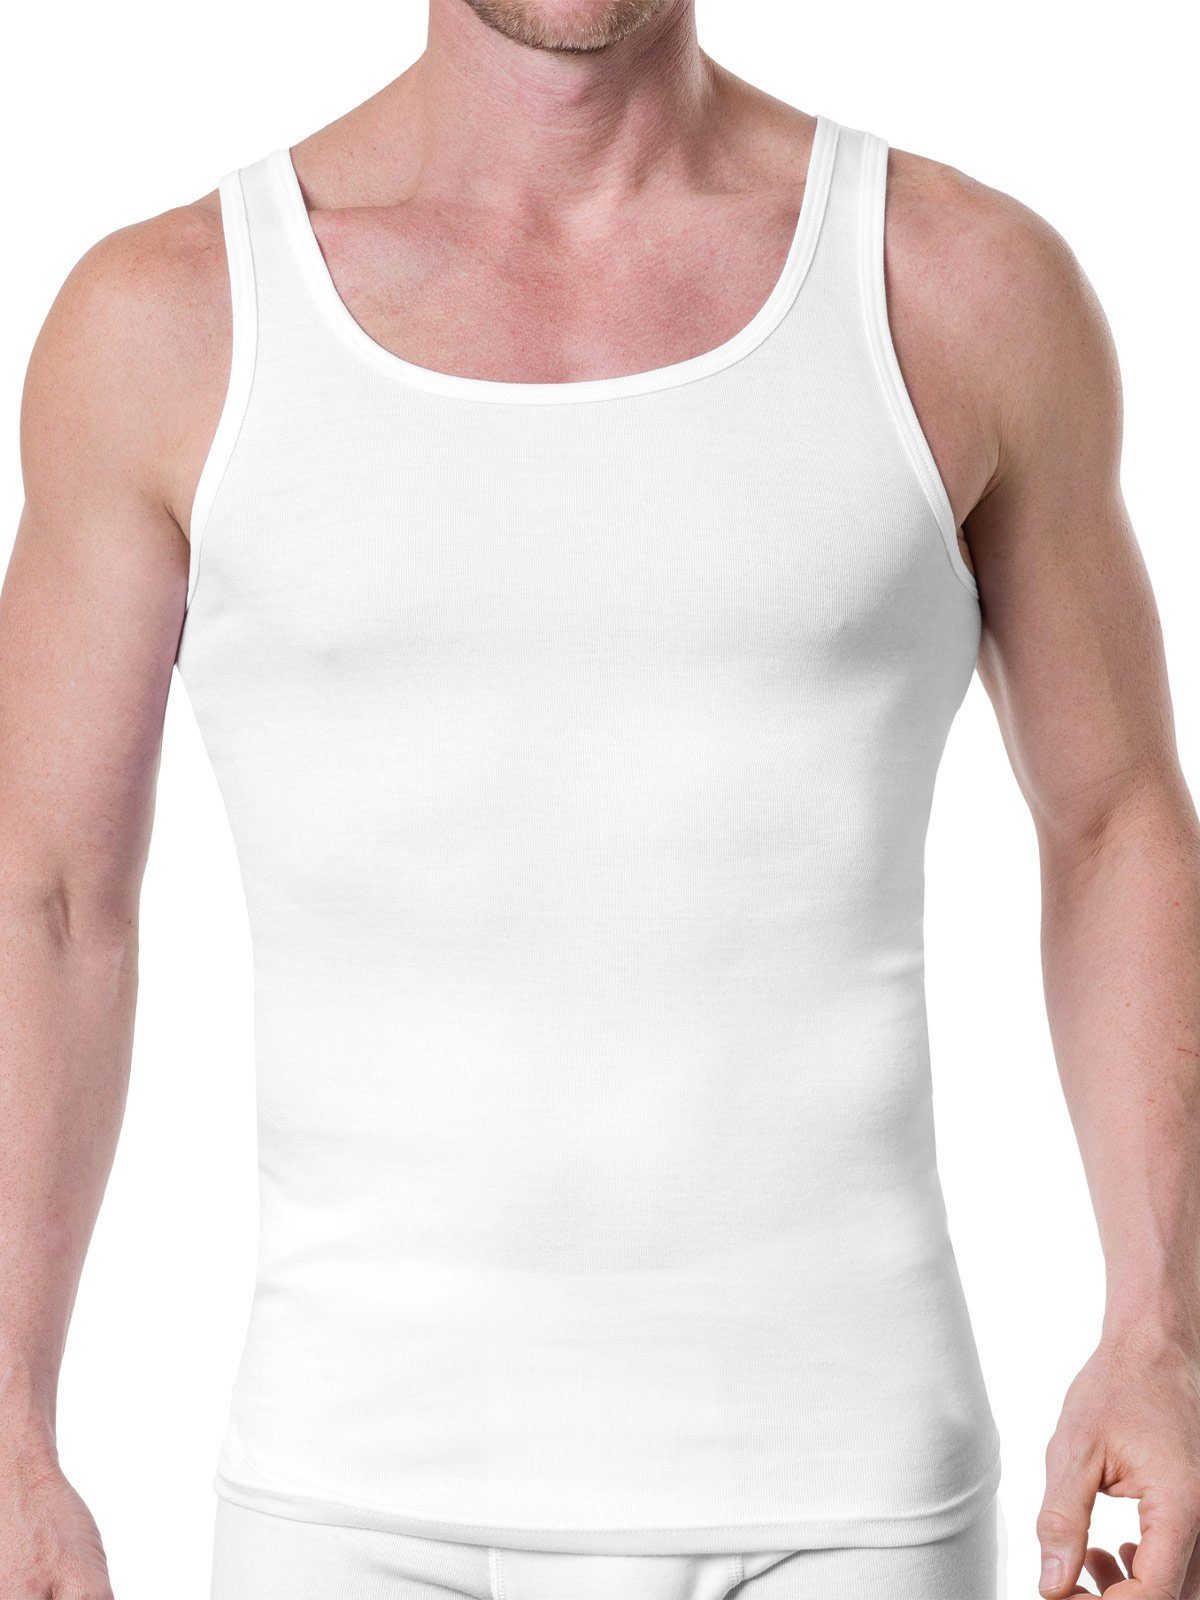 KUMPF Achselhemd Cotton Bio (Spar-Set, 8er Herren Unterhemd weiss 8-St) - Sparpack